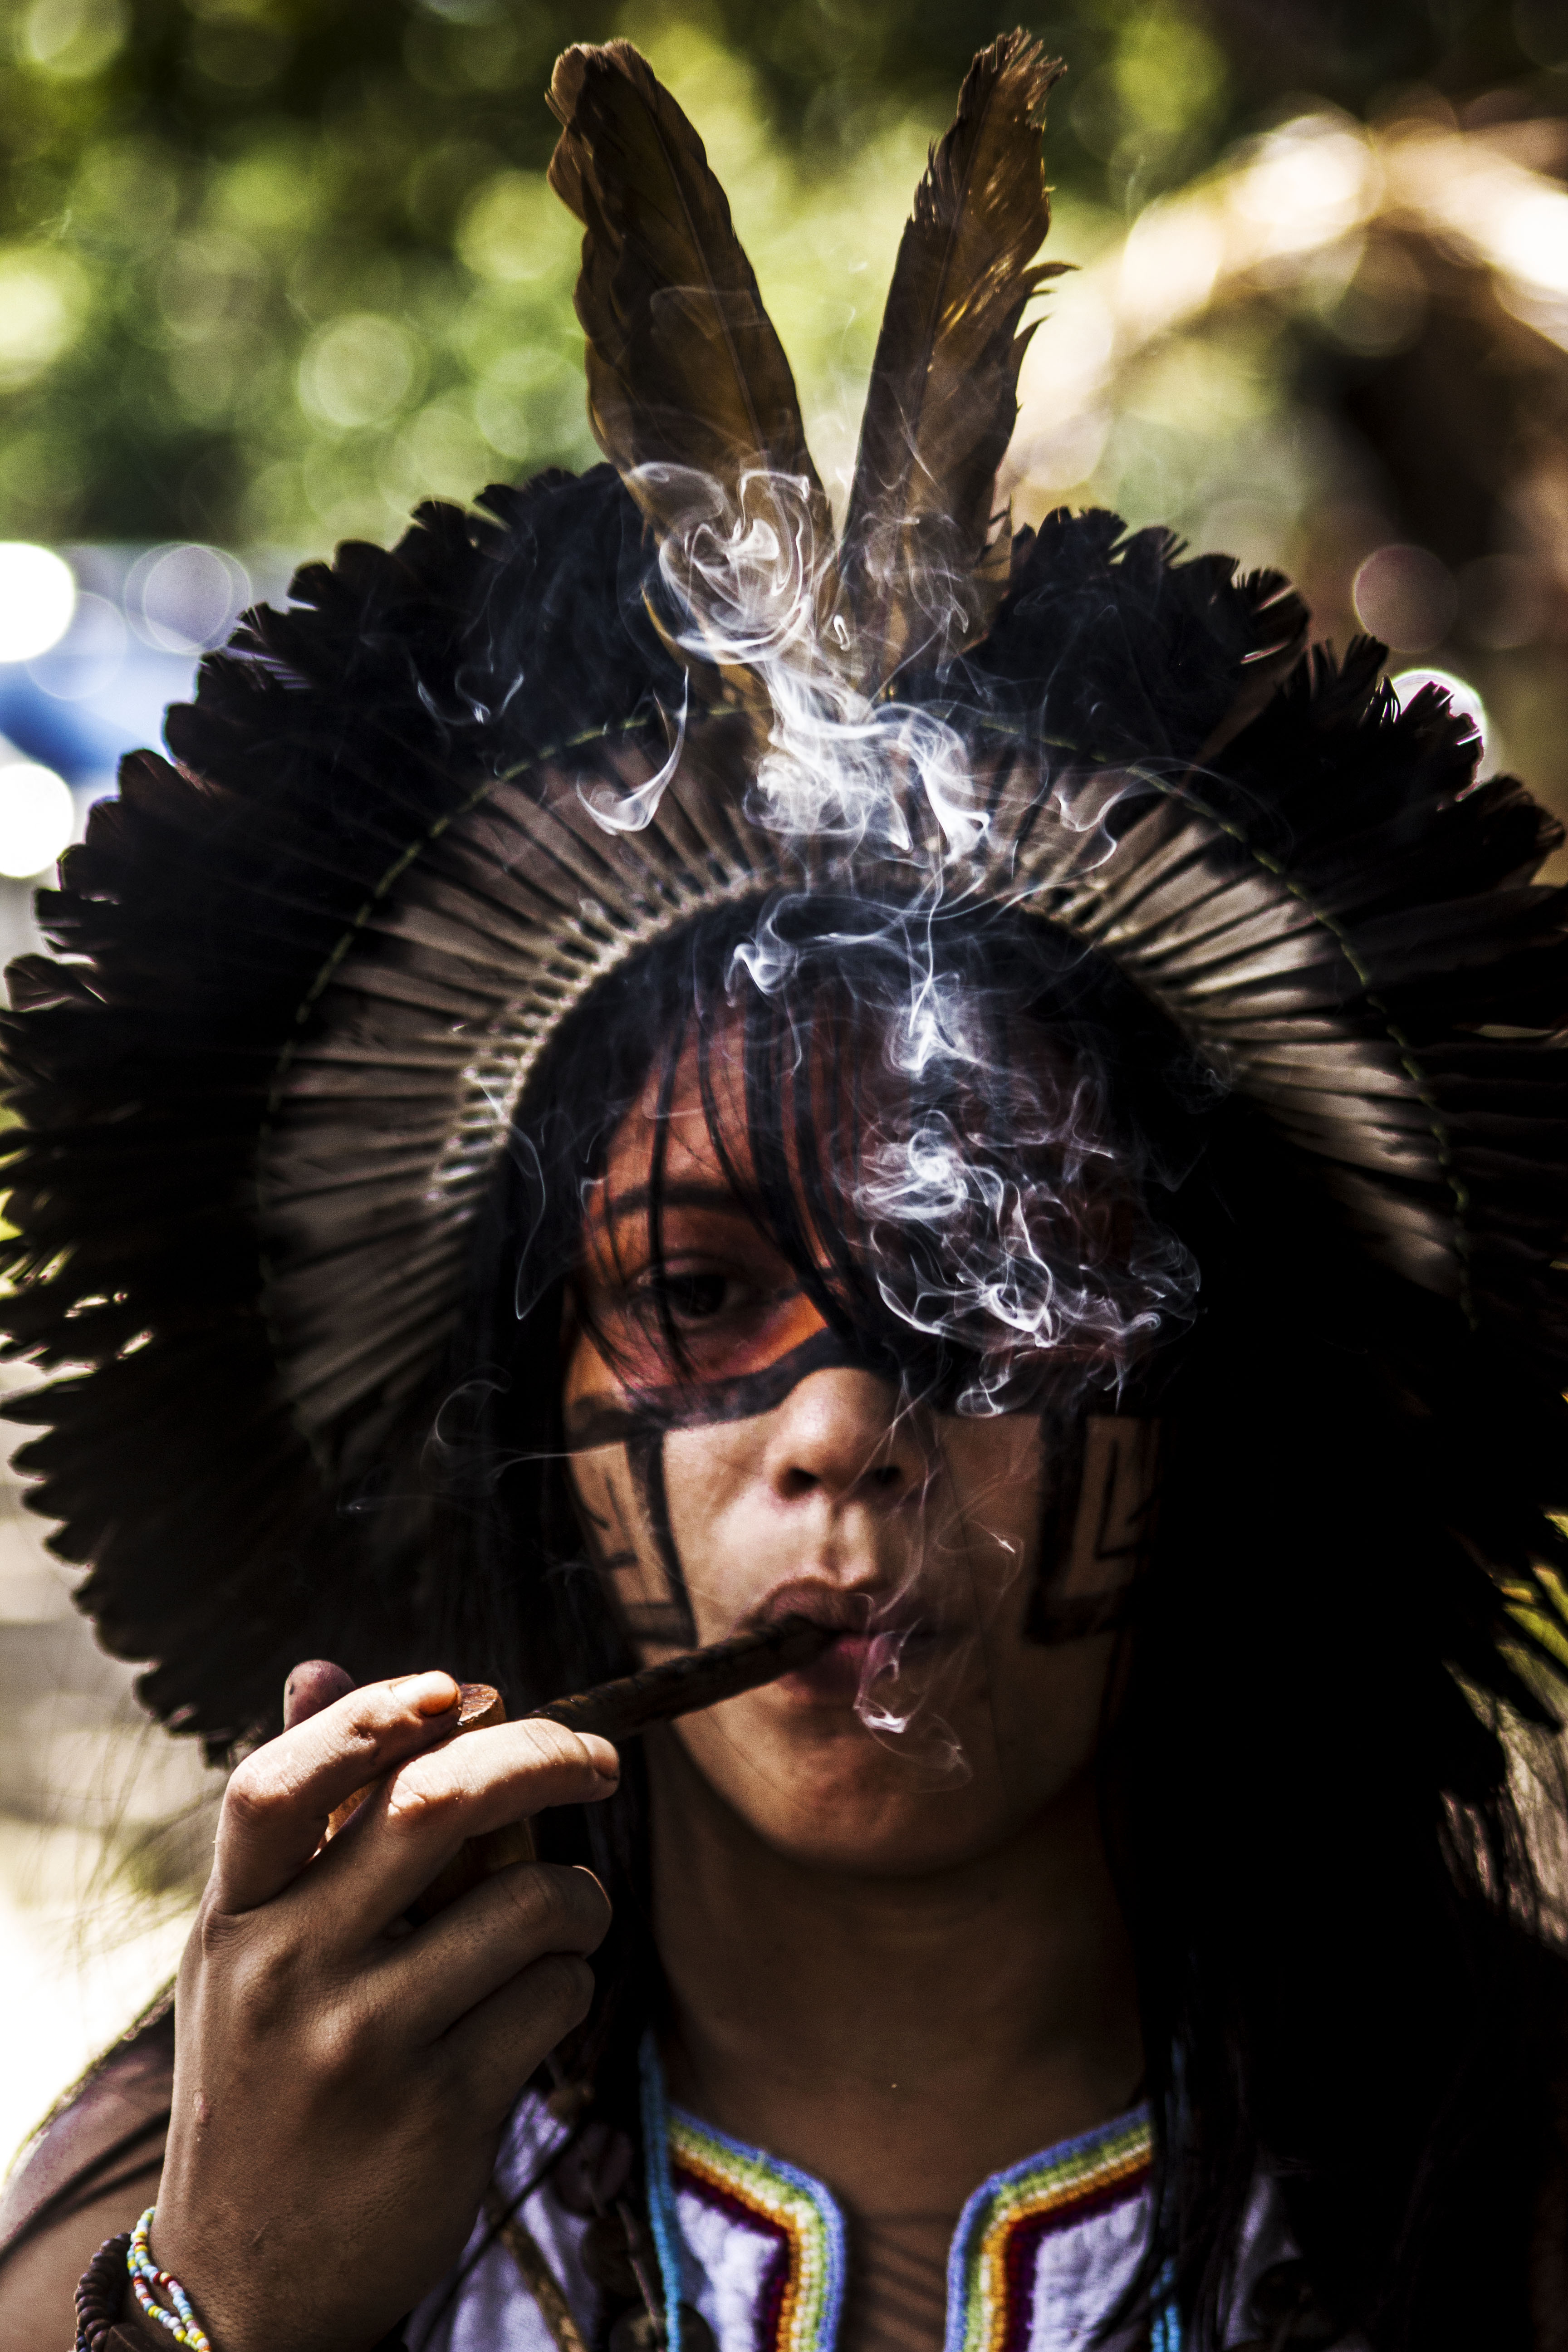 (Foto: Iago Barreto Soares/ Divulgação)Iago Barreto Soares é fotógrafo, indigenista e professor, atuando desde 2014 junto aos povos indígenas do Ceará.